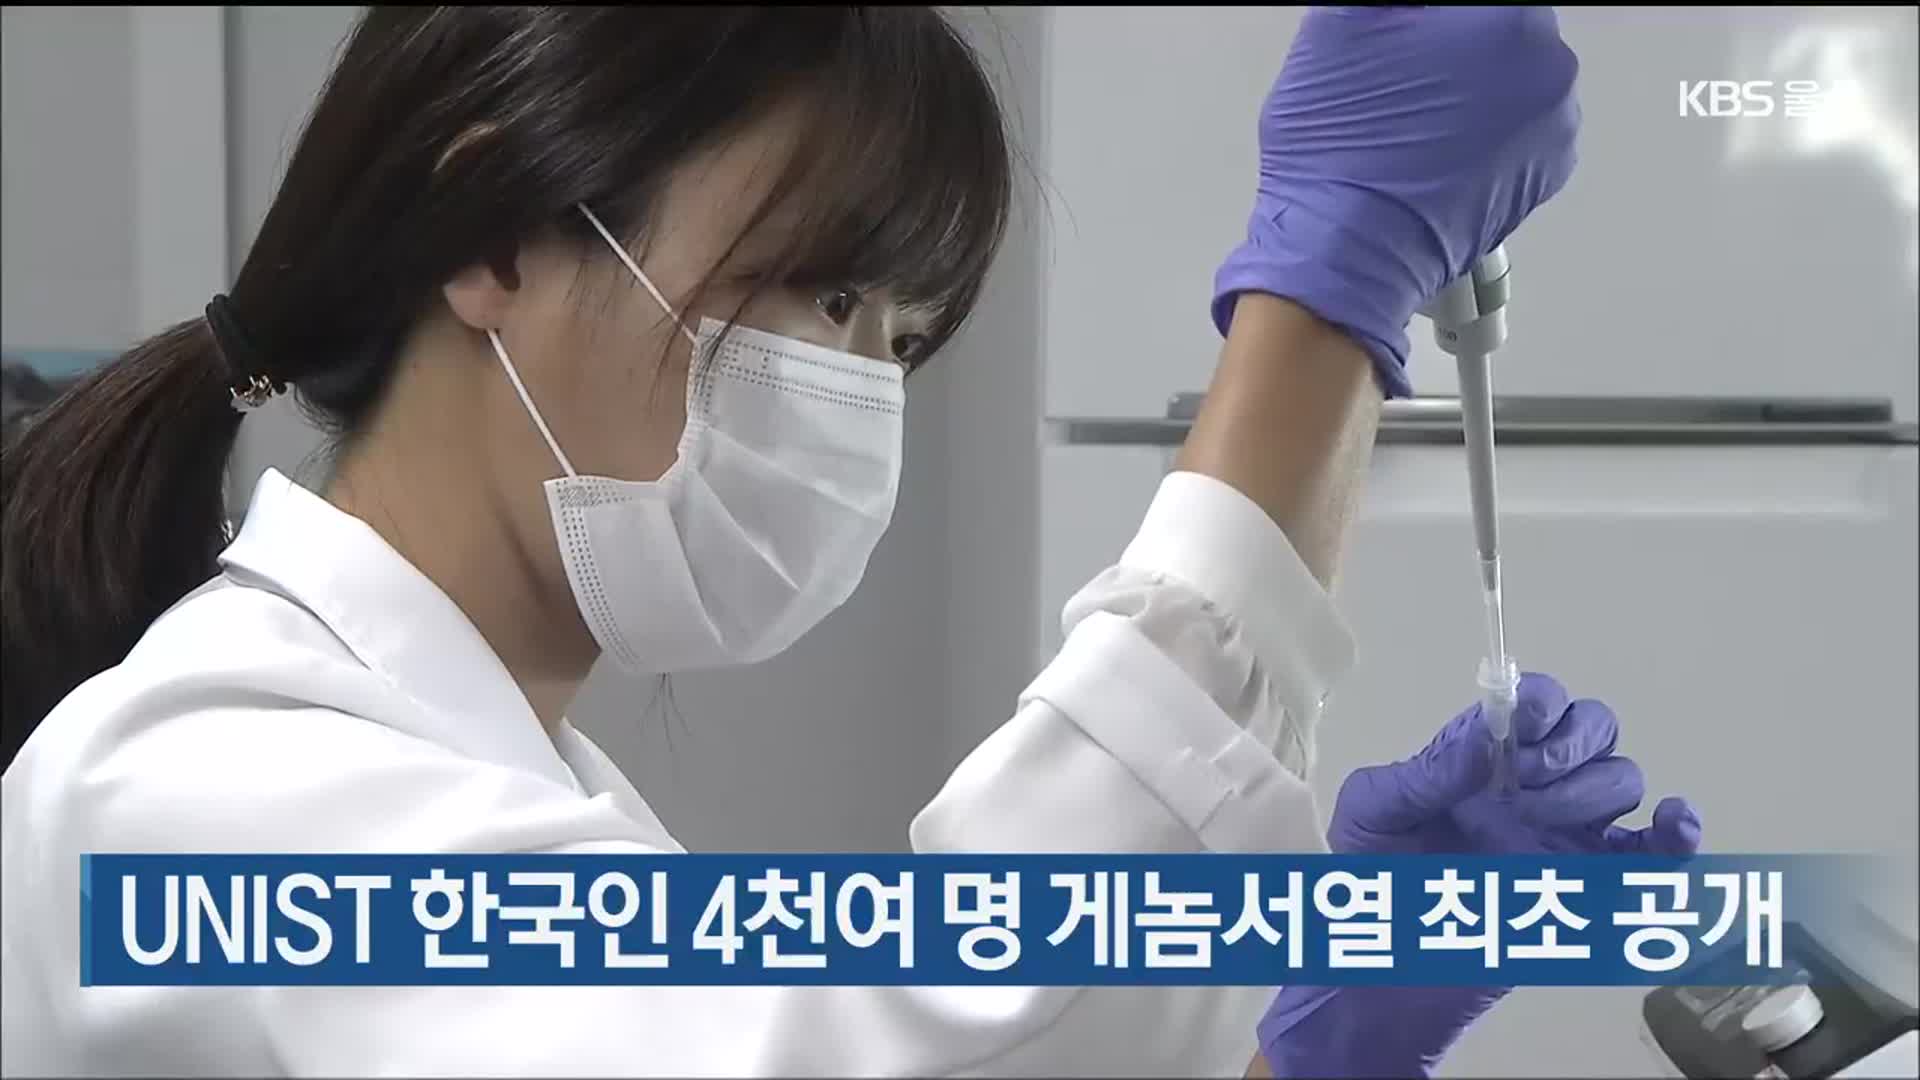 UNIST 한국인 4천여 명 게놈서열 최초 공개